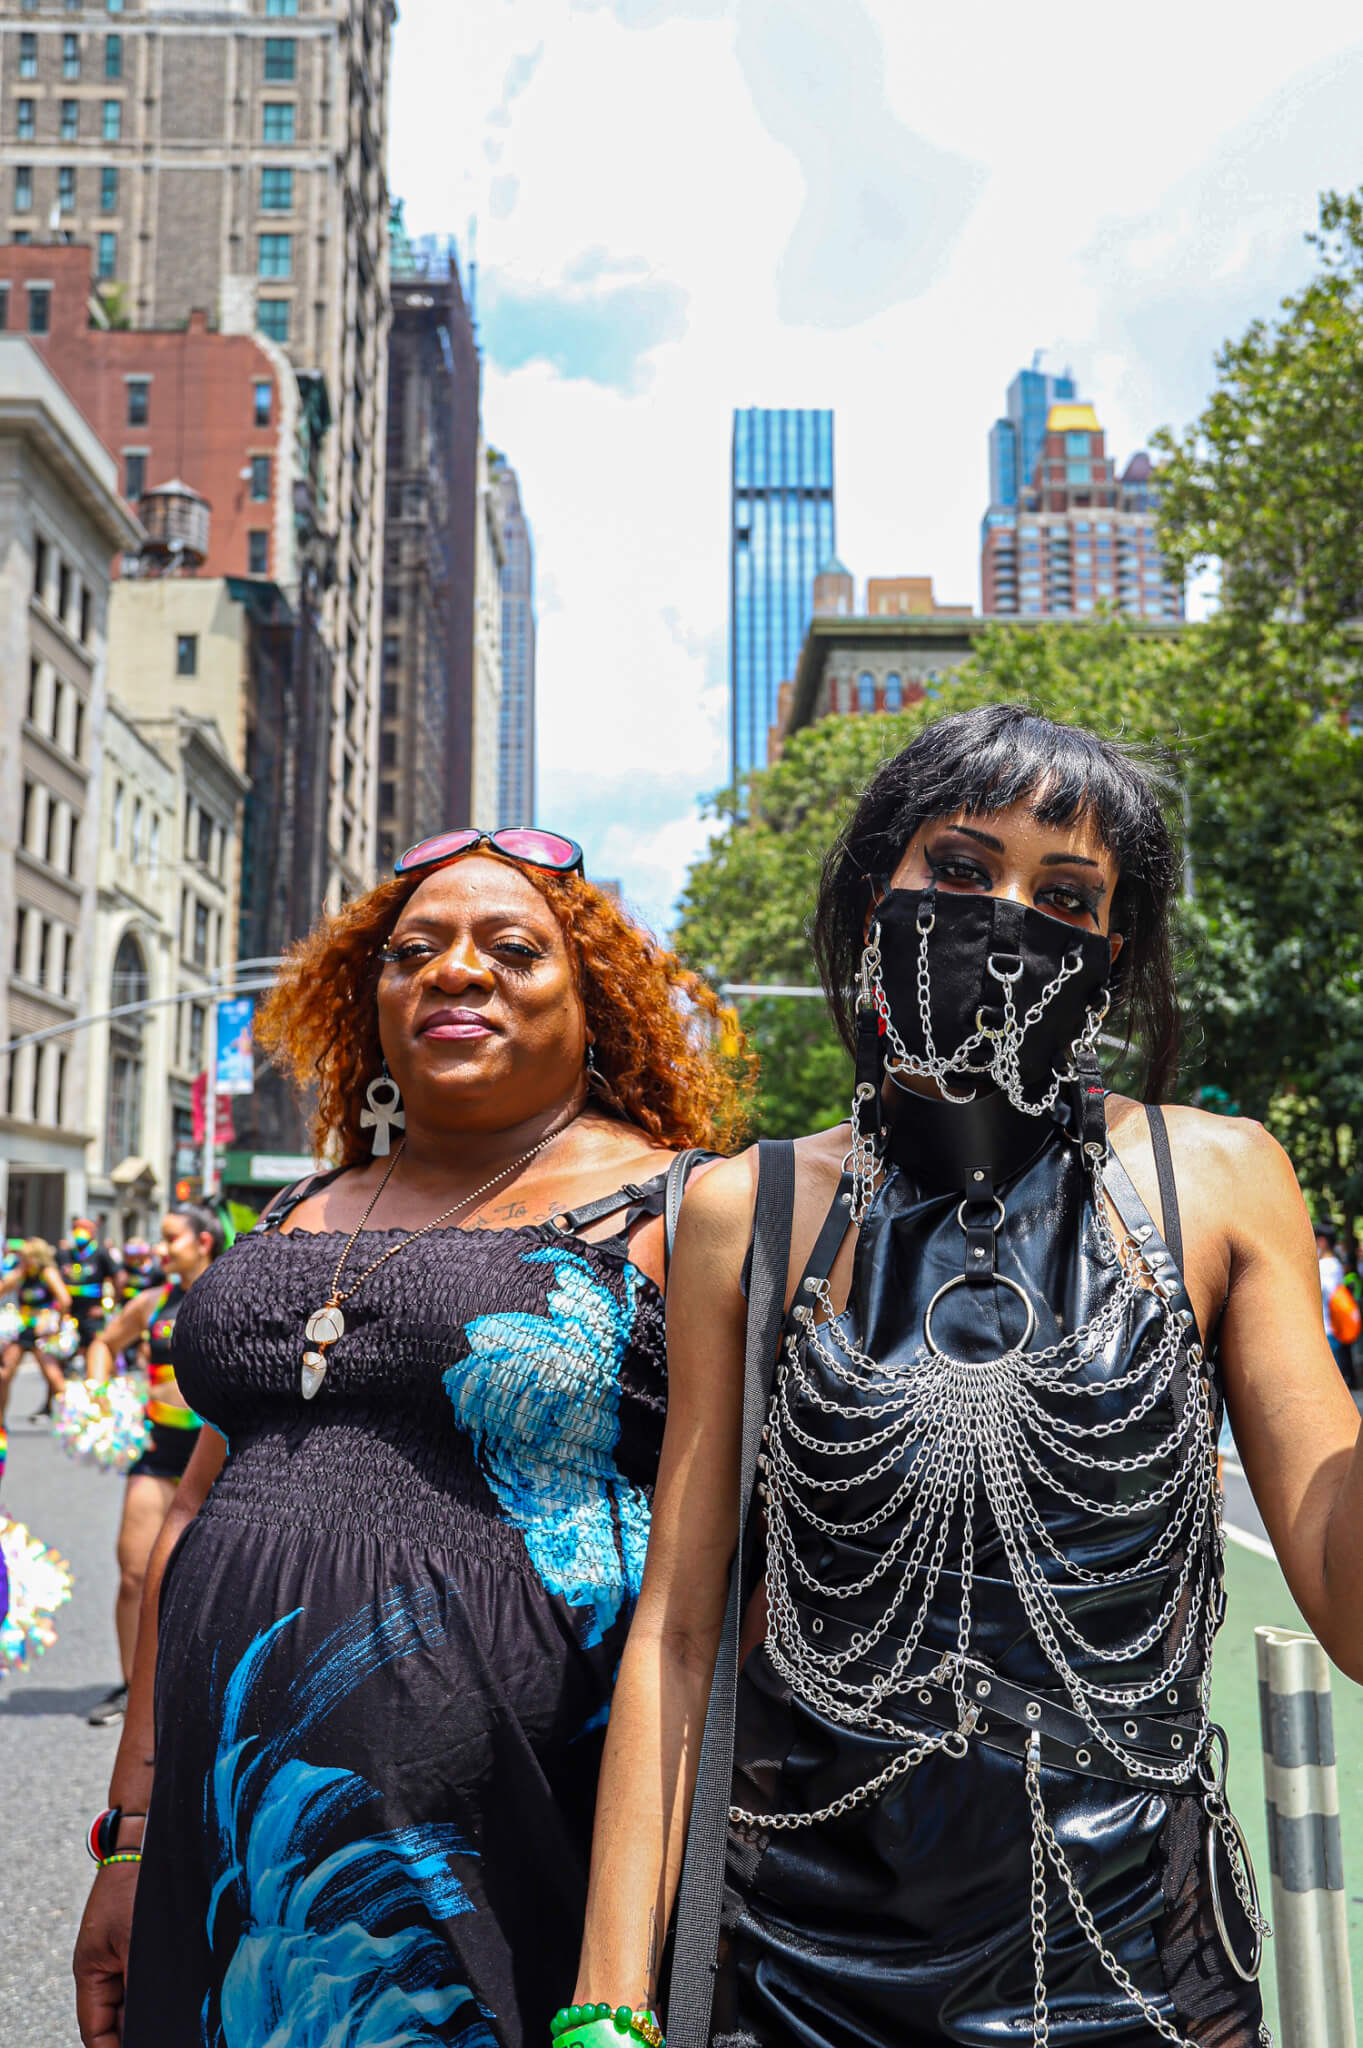 New York City Pride March, NY